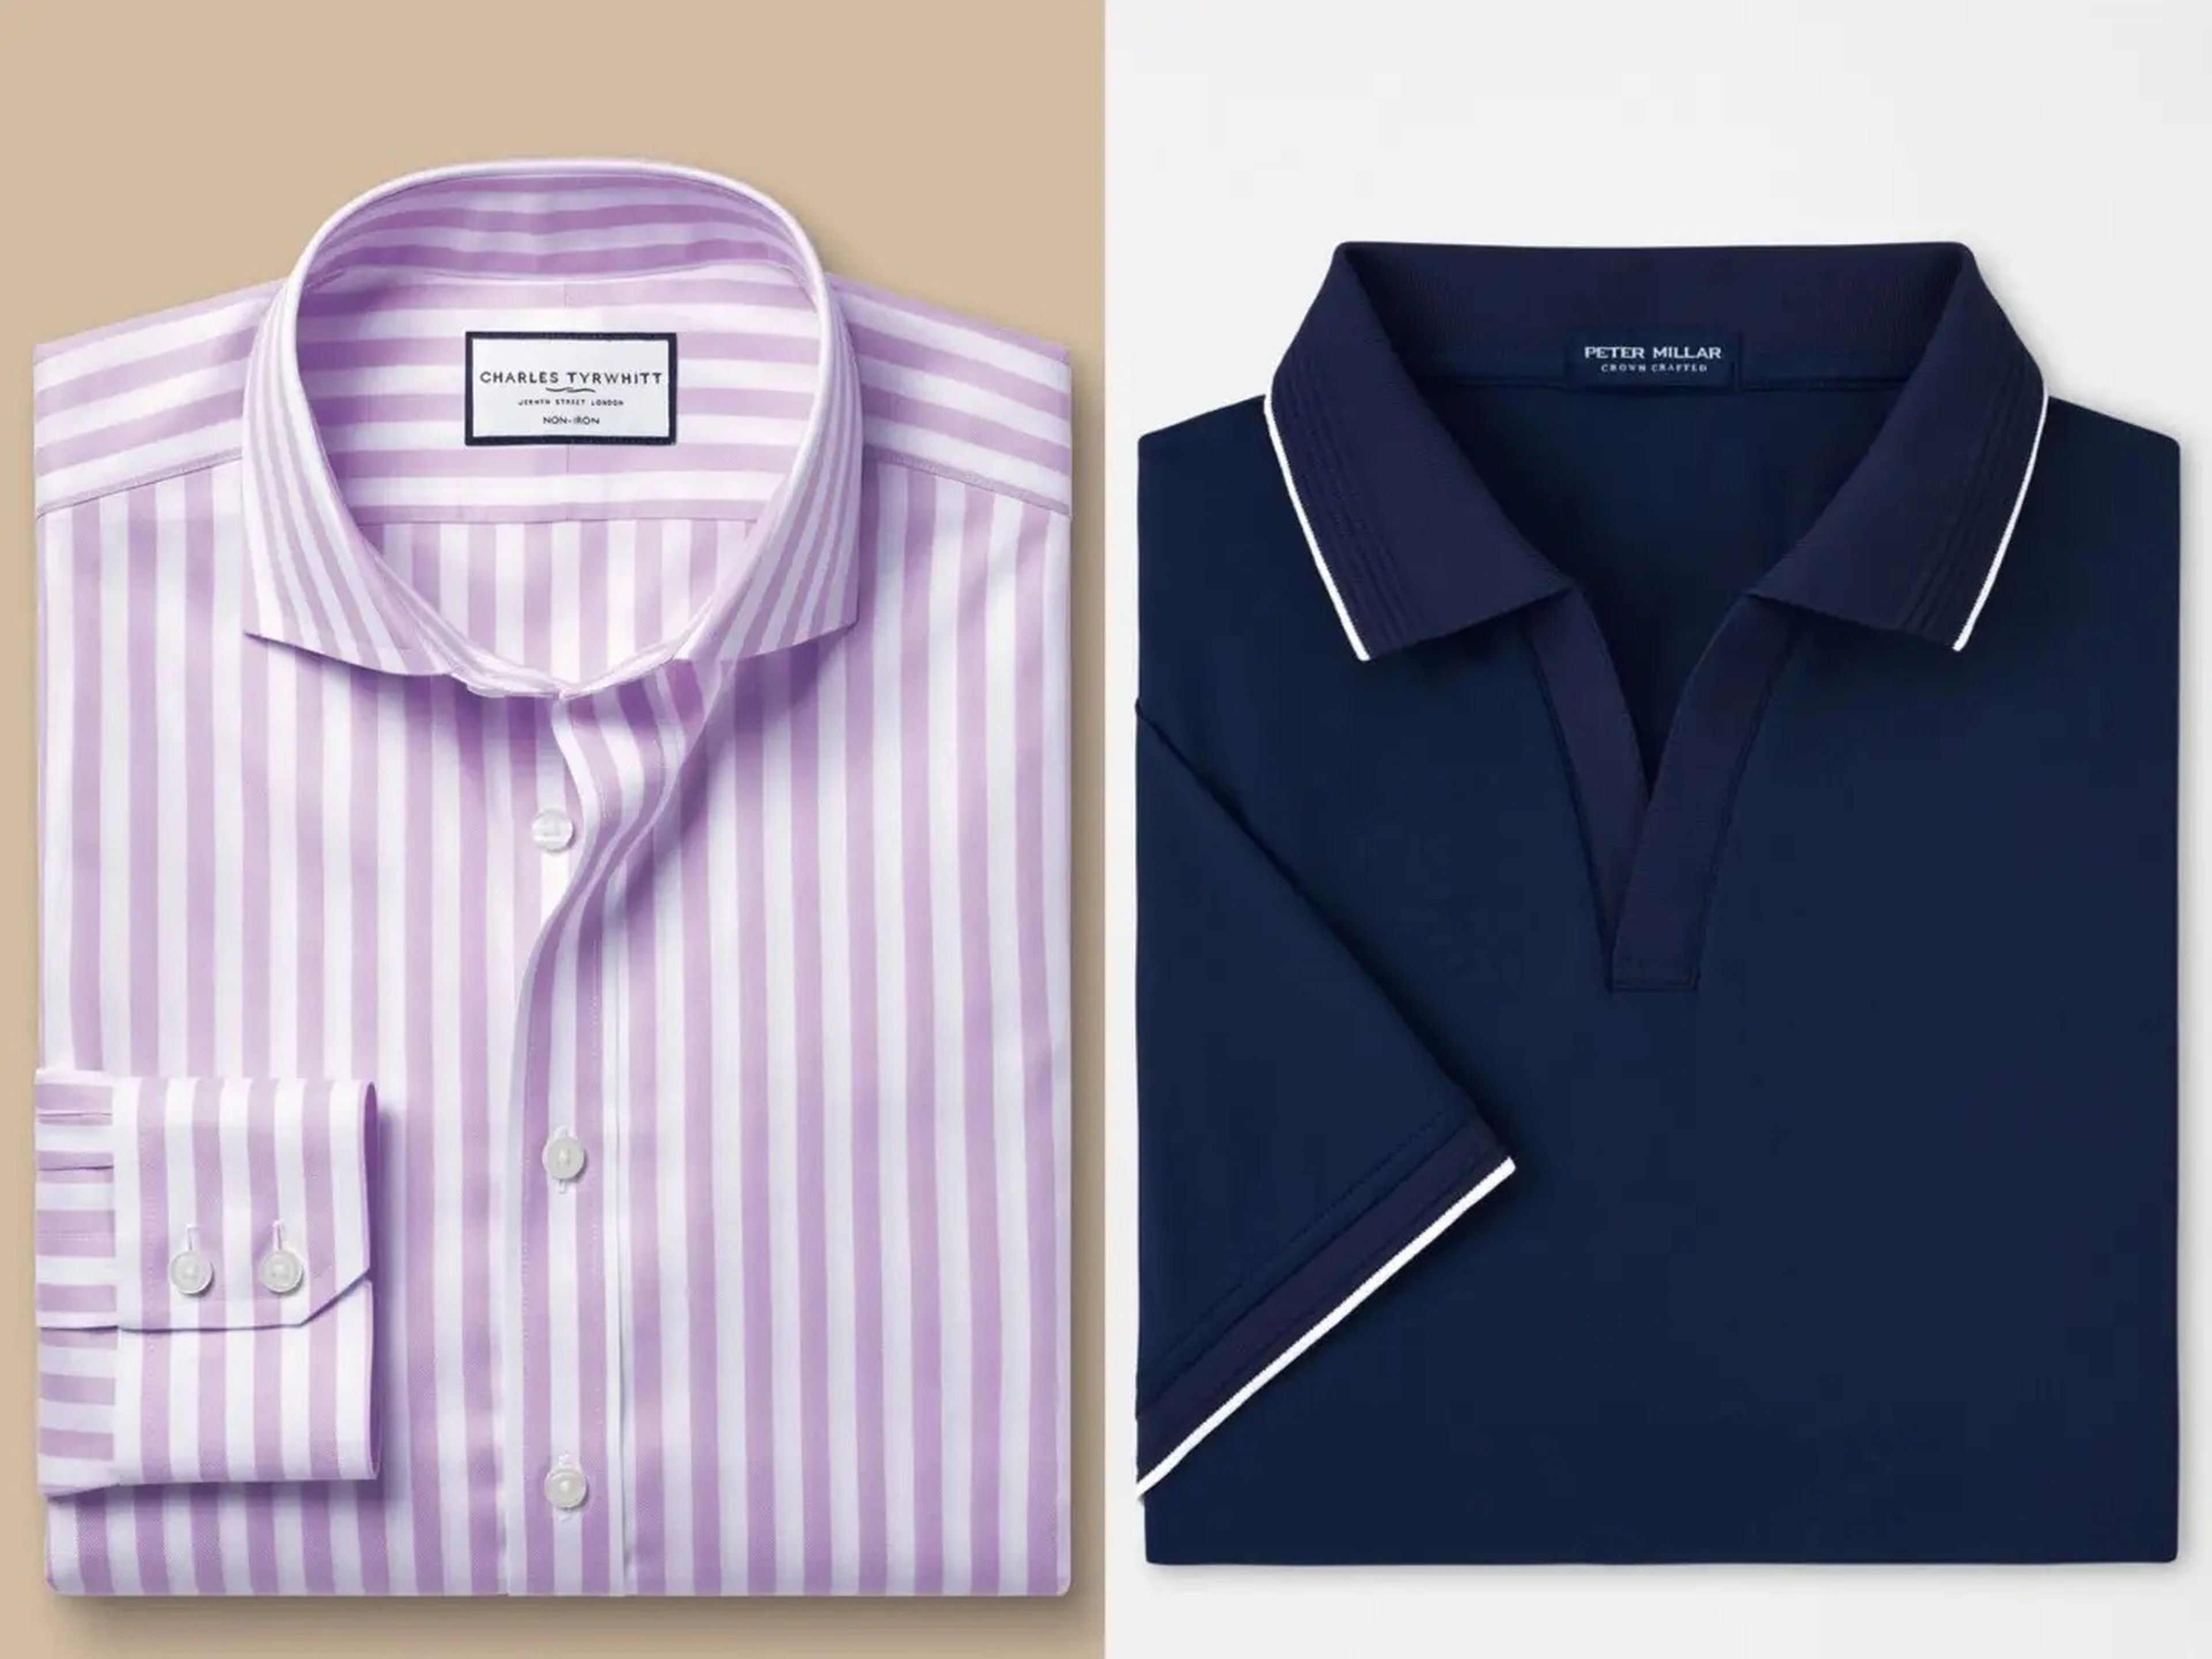 Un asesor de estilo dice que las camisas Charles Tyrwhitt son un buen "kit de iniciación". Peter Millar es el encuentro perfecto entre lujo y ropa deportiva.